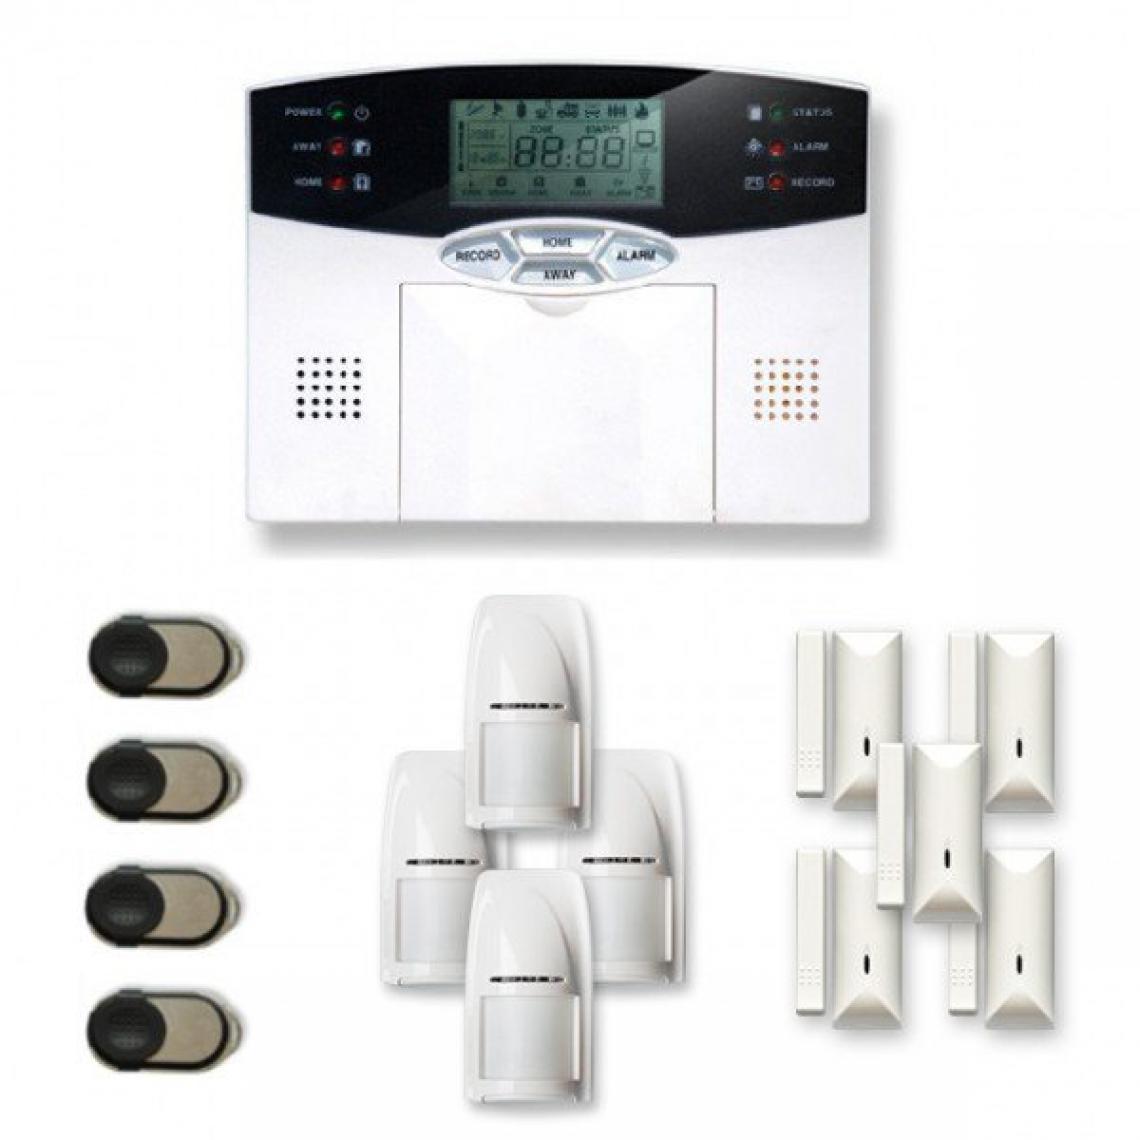 Tike Securite - Alarme maison sans fil MN18 Compatible Box internet - Alarme connectée